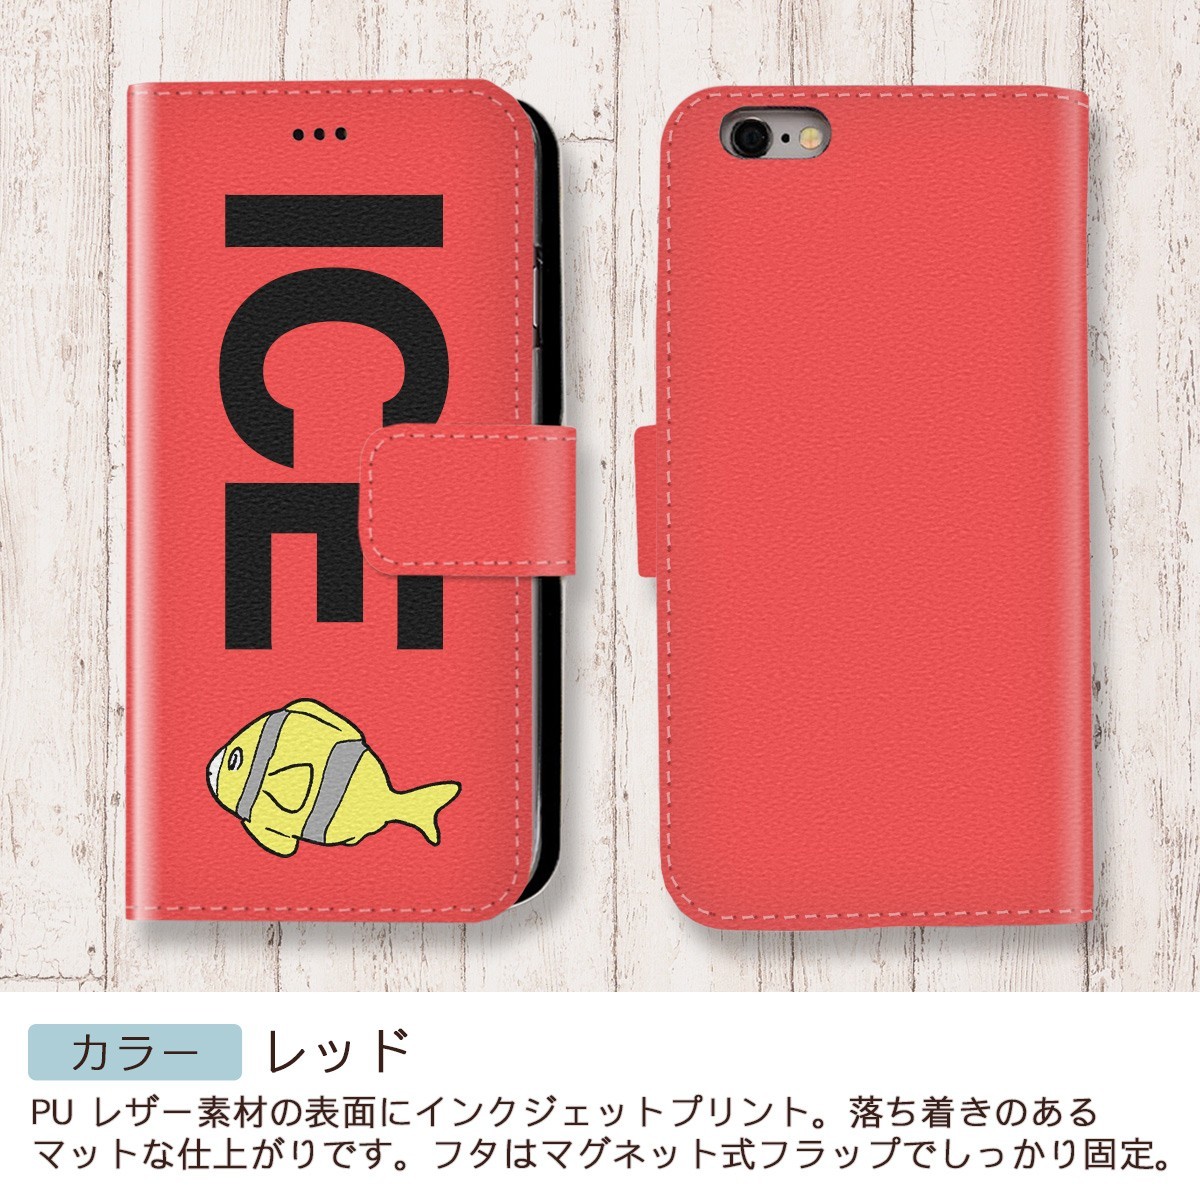 カクレクマノミ 魚 おもしろ X XSケース ケース iPhone X iPhone XS ケース 手帳型 アイフォン かわいい カッコイイ メンズ レ_画像6